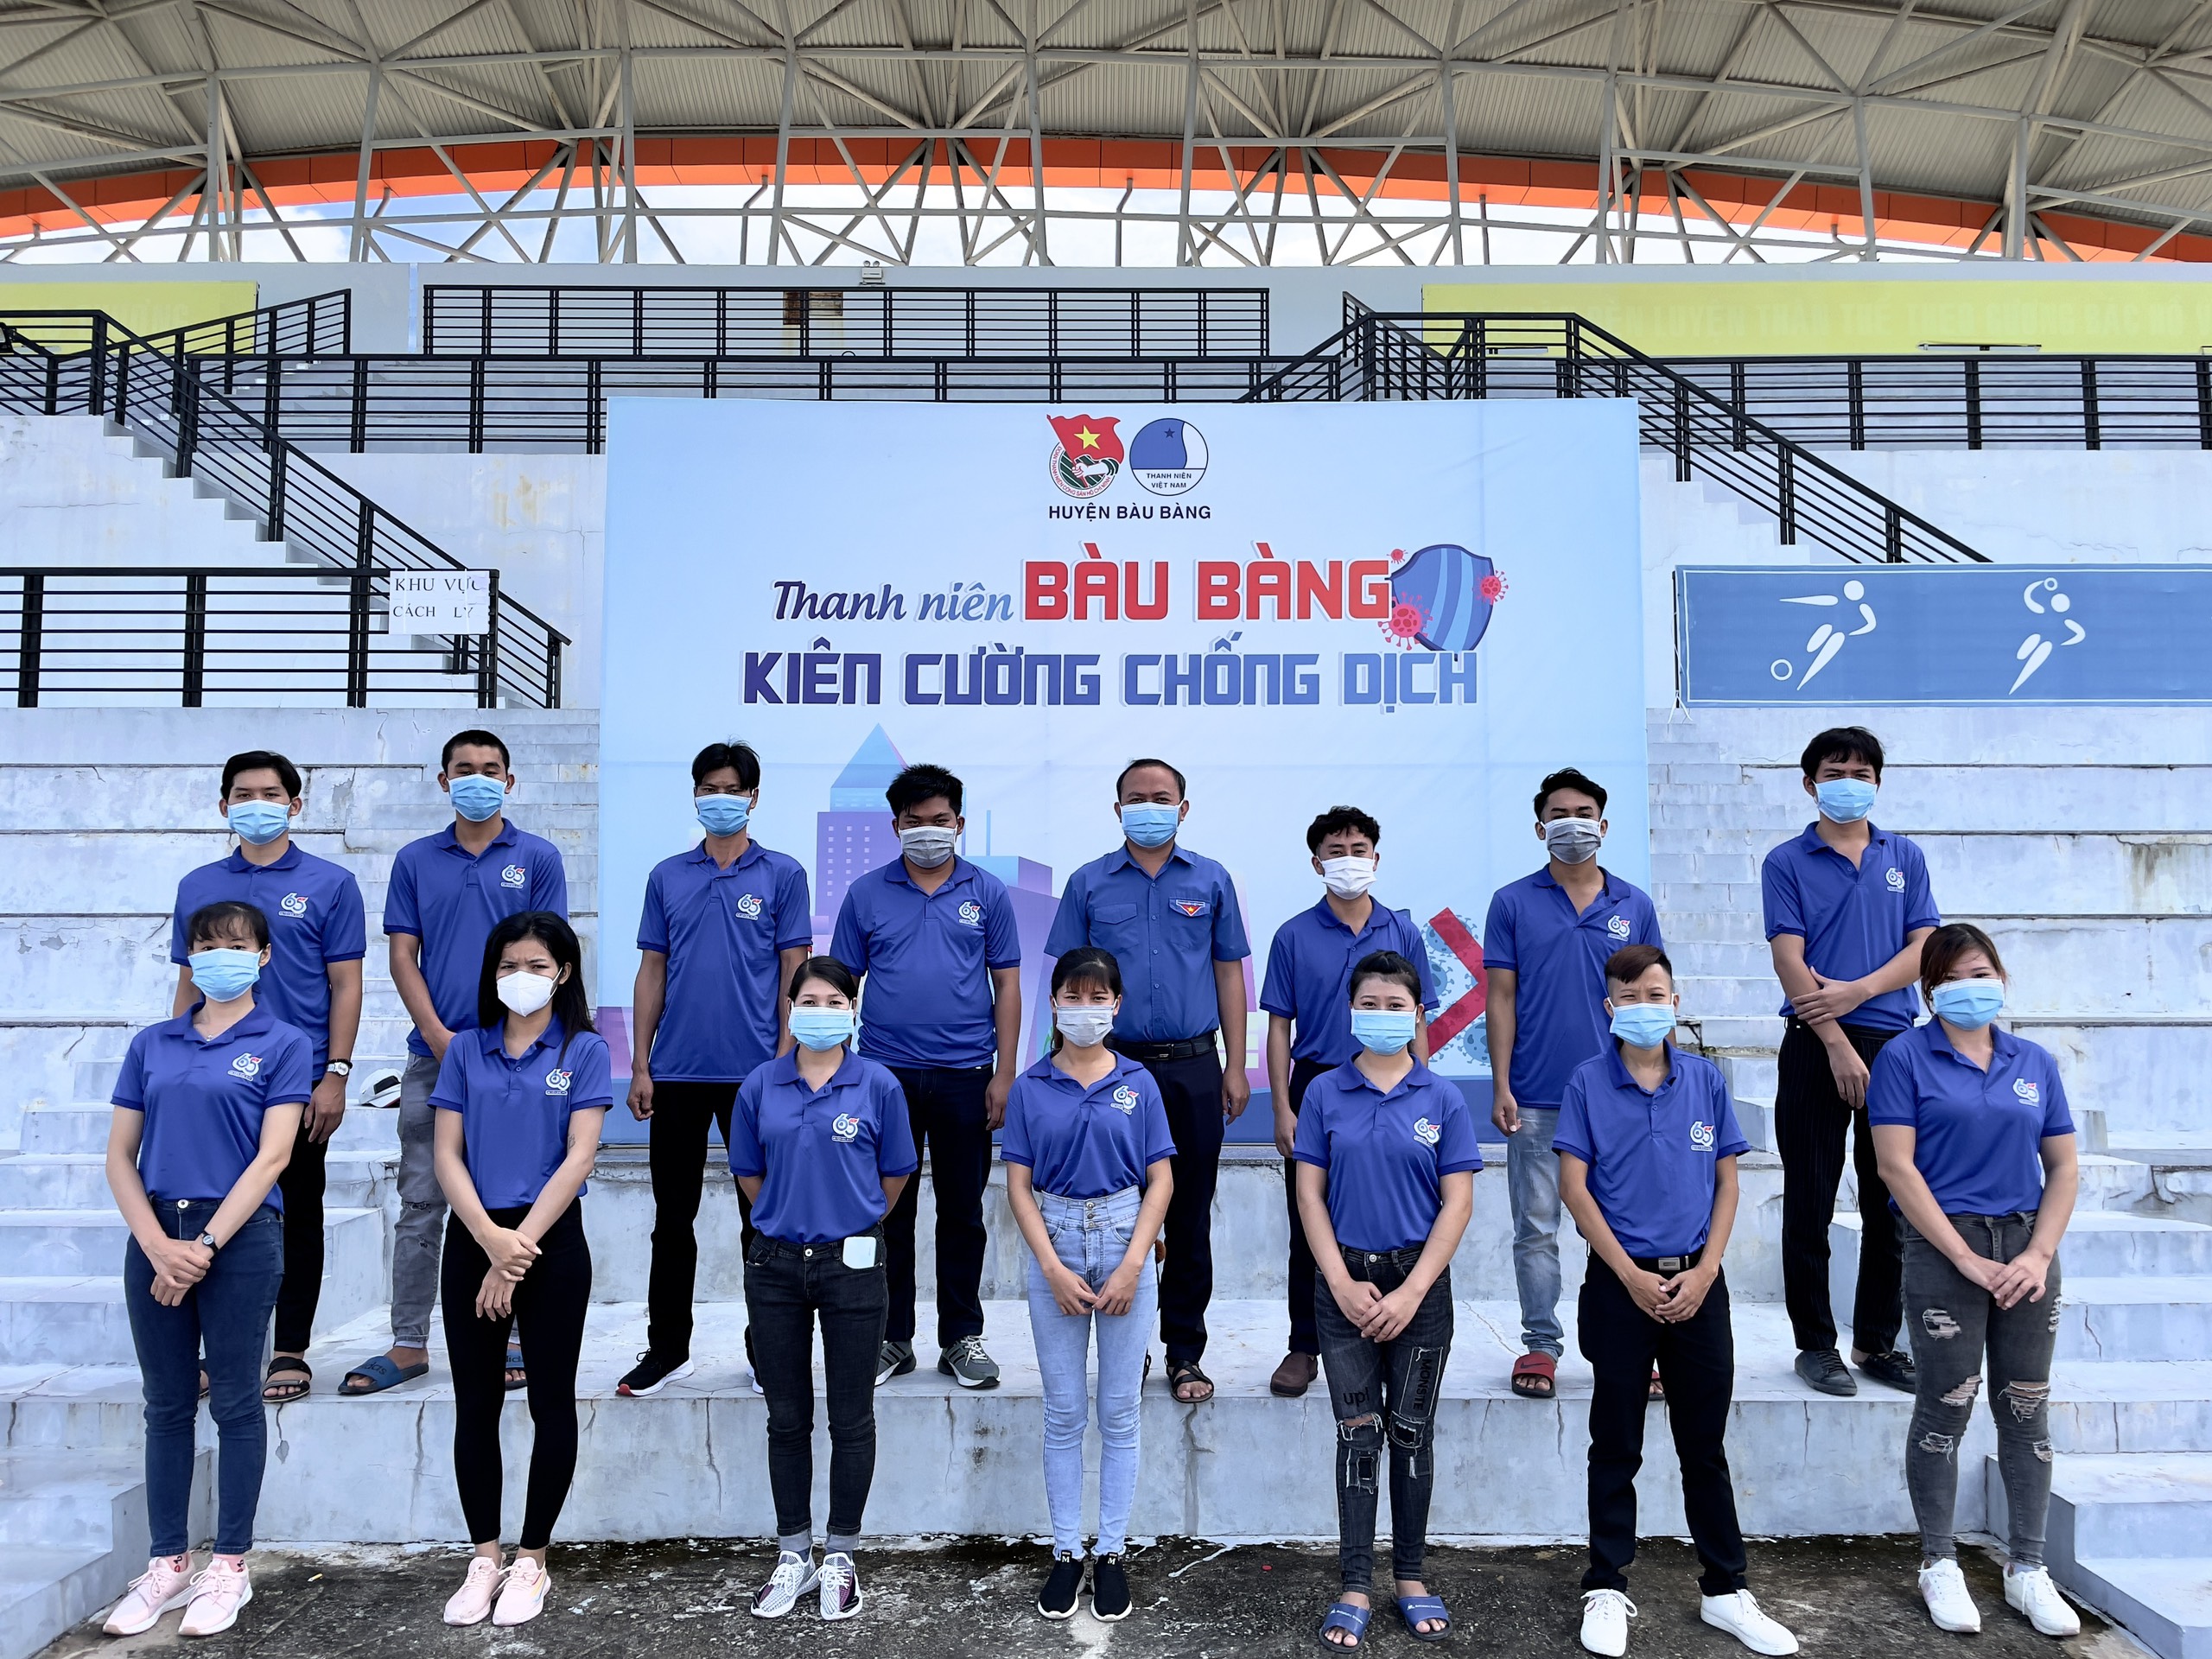 Huyện đoàn Bàu Bàng tiếp tục đưa đoàn viên thanh niên tình nguyện hỗ trợ tại bệnh viện dã chiến và các khu điều trị Covid-19.